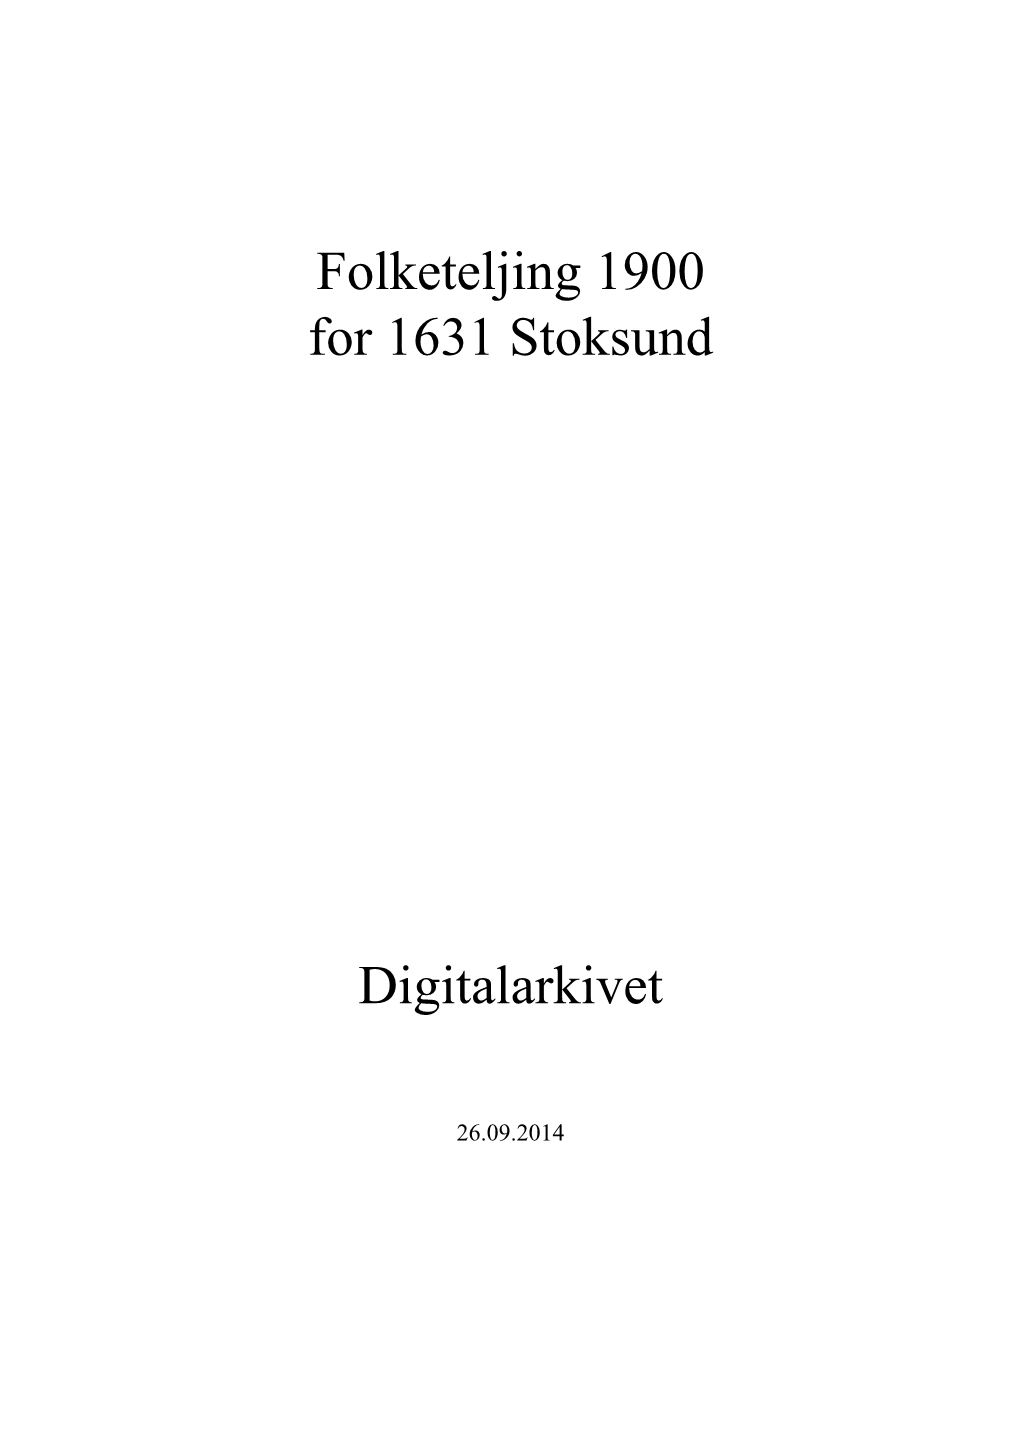 Folketeljing 1900 for 1631 Stoksund Digitalarkivet